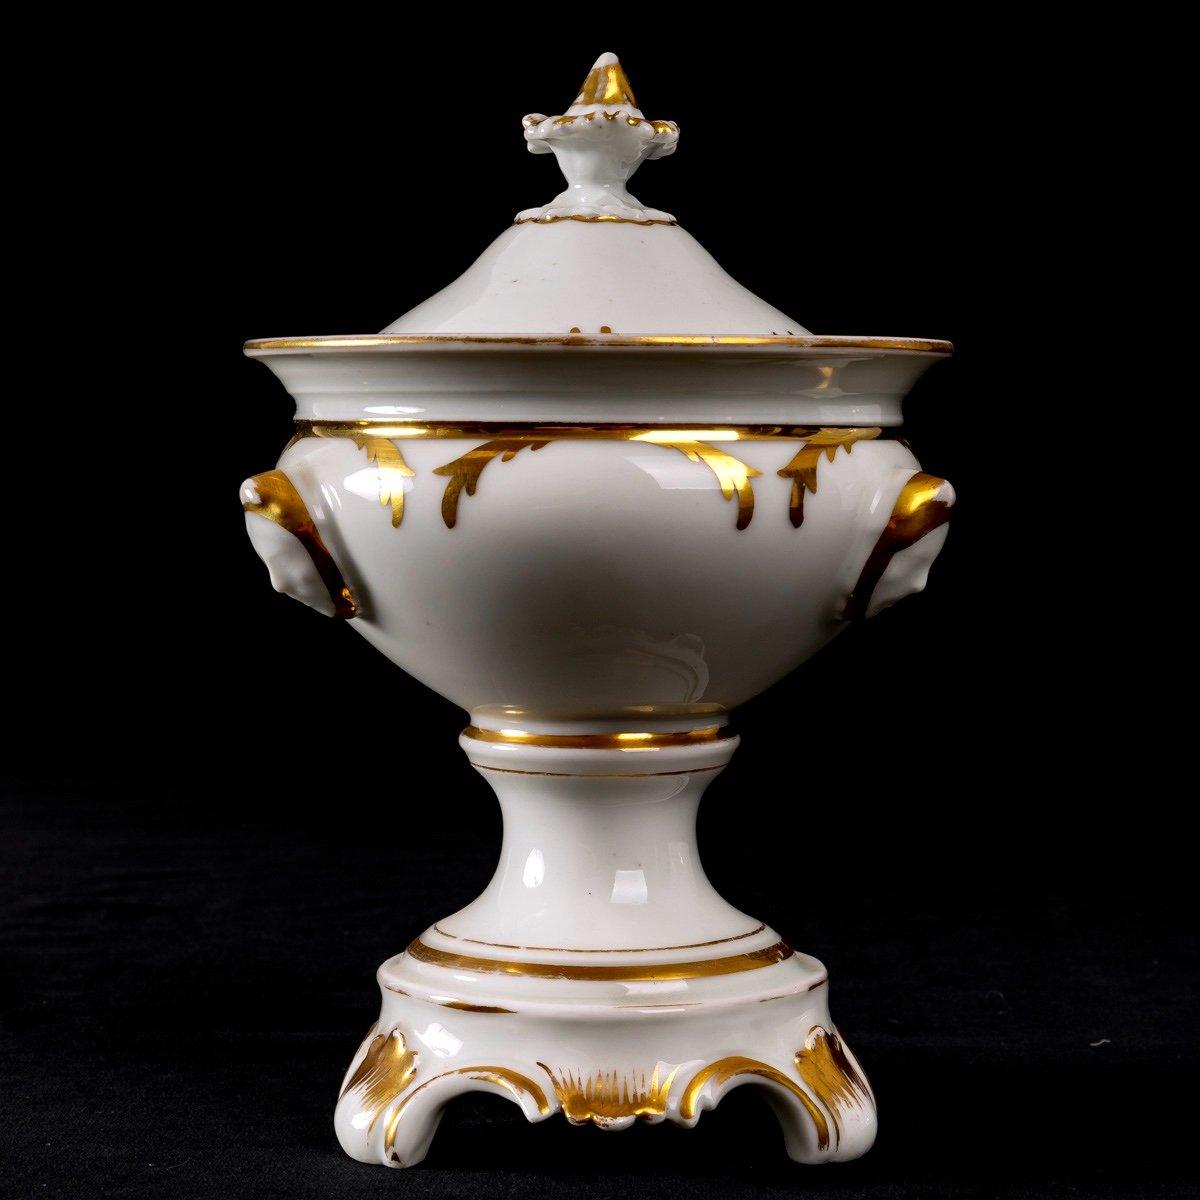 Tripod Fruit Bowl with Lid, Paris Porcelain, 18th Century For Sale 2